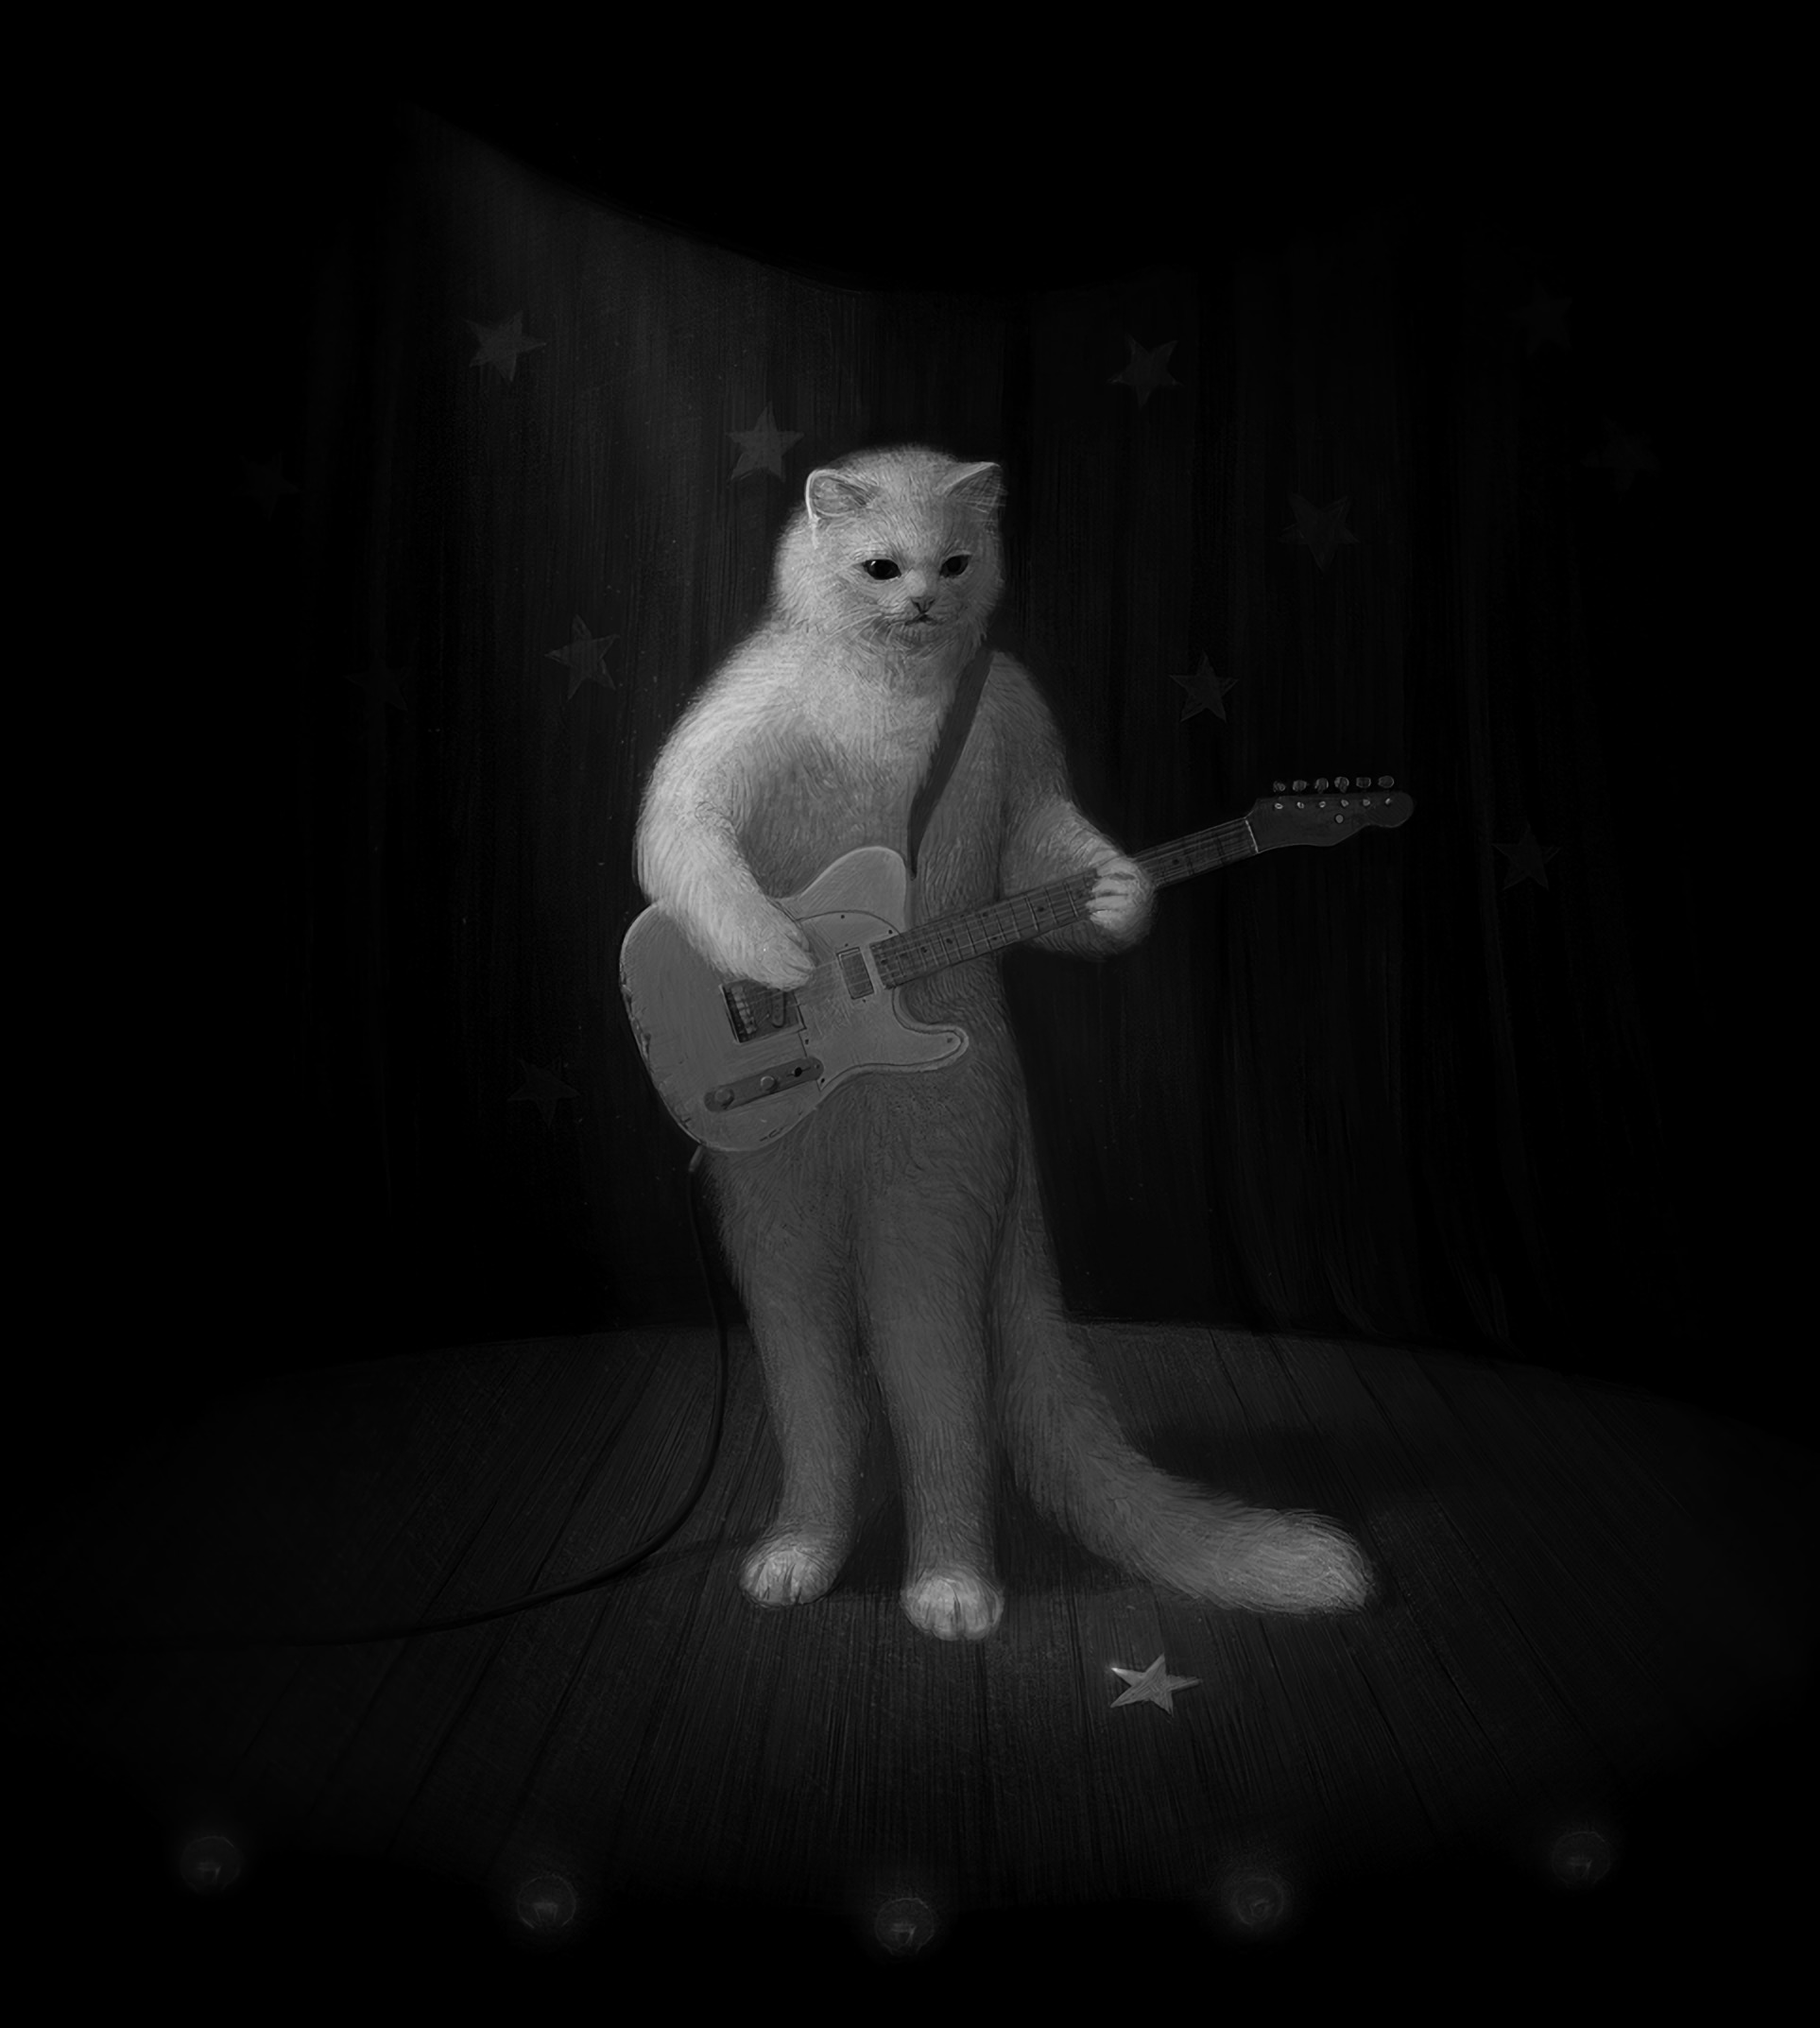 art, bw, guitar, chb, musician, cat